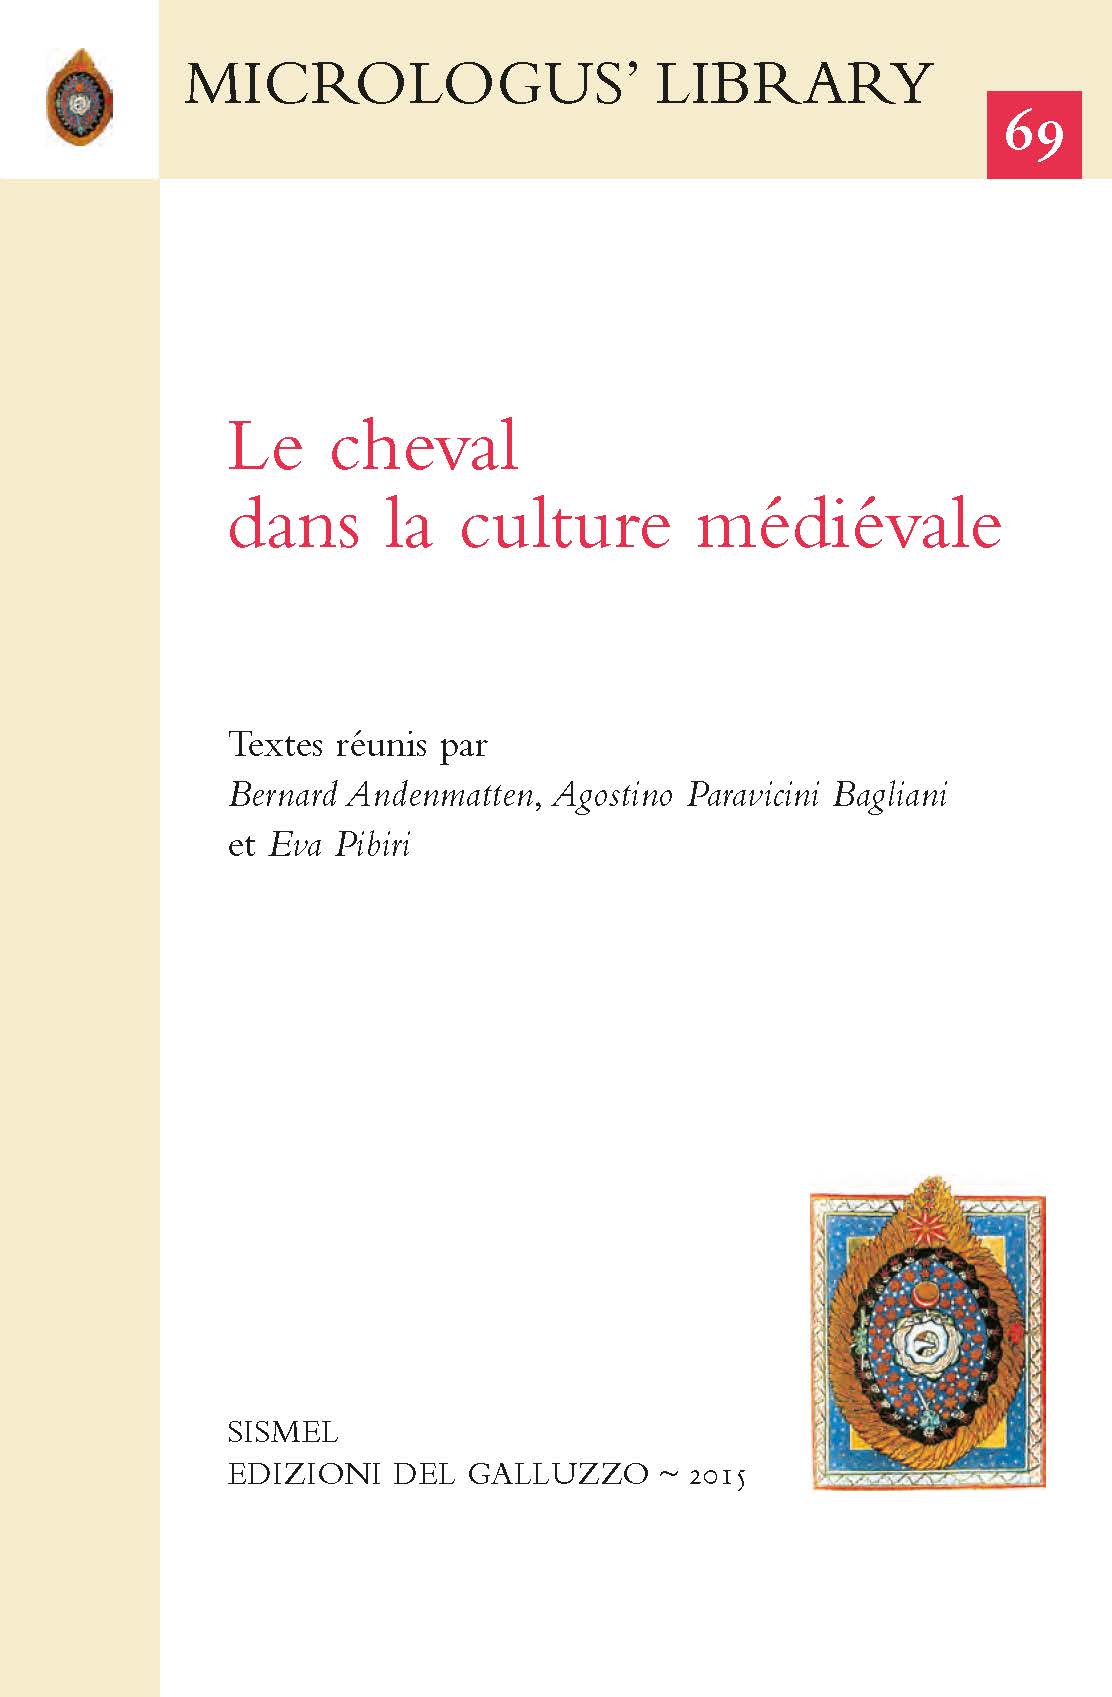 Pages de Le_cheval_dans_la_culture_medievale.jpeg